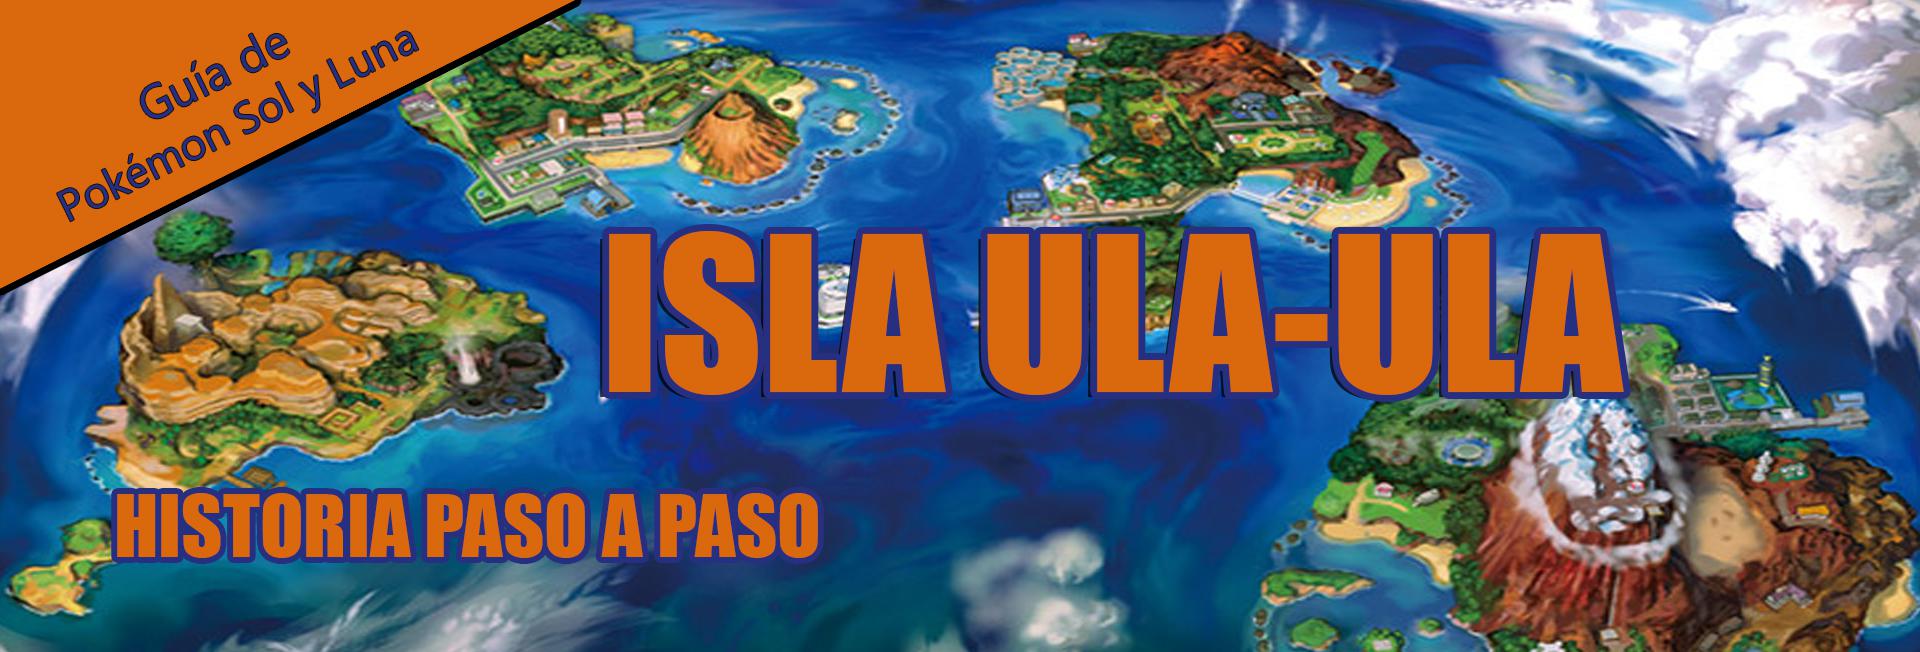 Pokémon Sol y Luna, guía completa - Isla Ula Ula - MeriStation